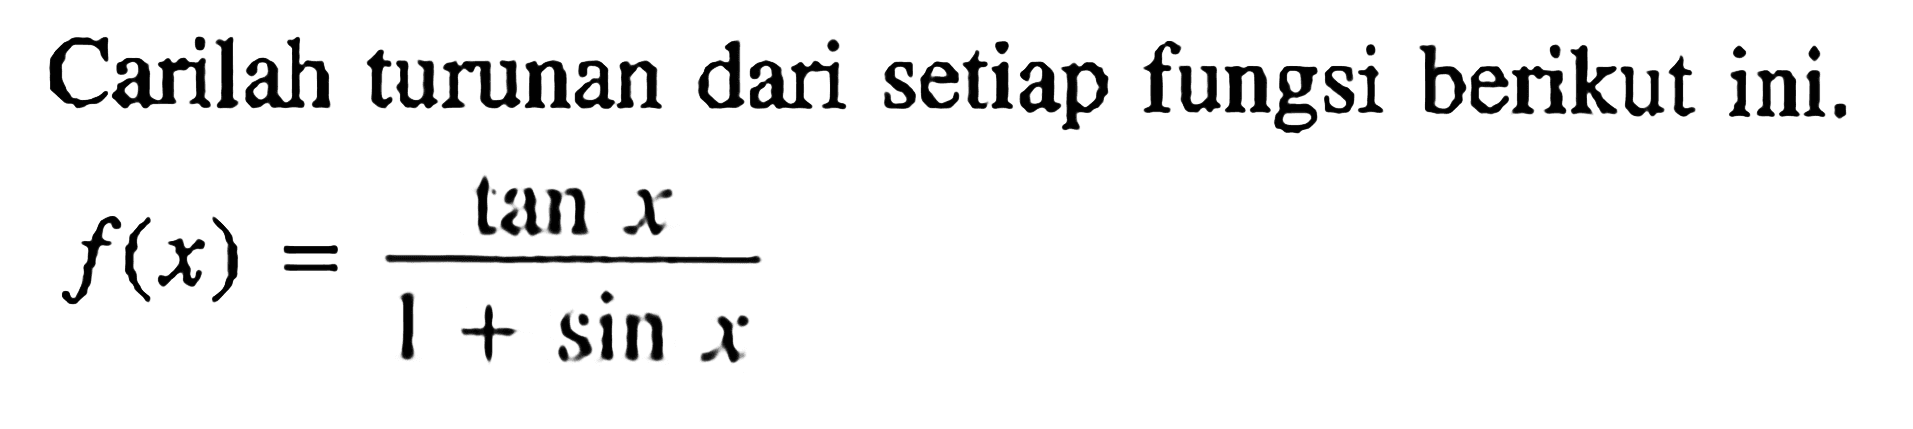 Carilah turunan dari setiap fungsi berikut ini. f(x)=tan x/(1+sin x)